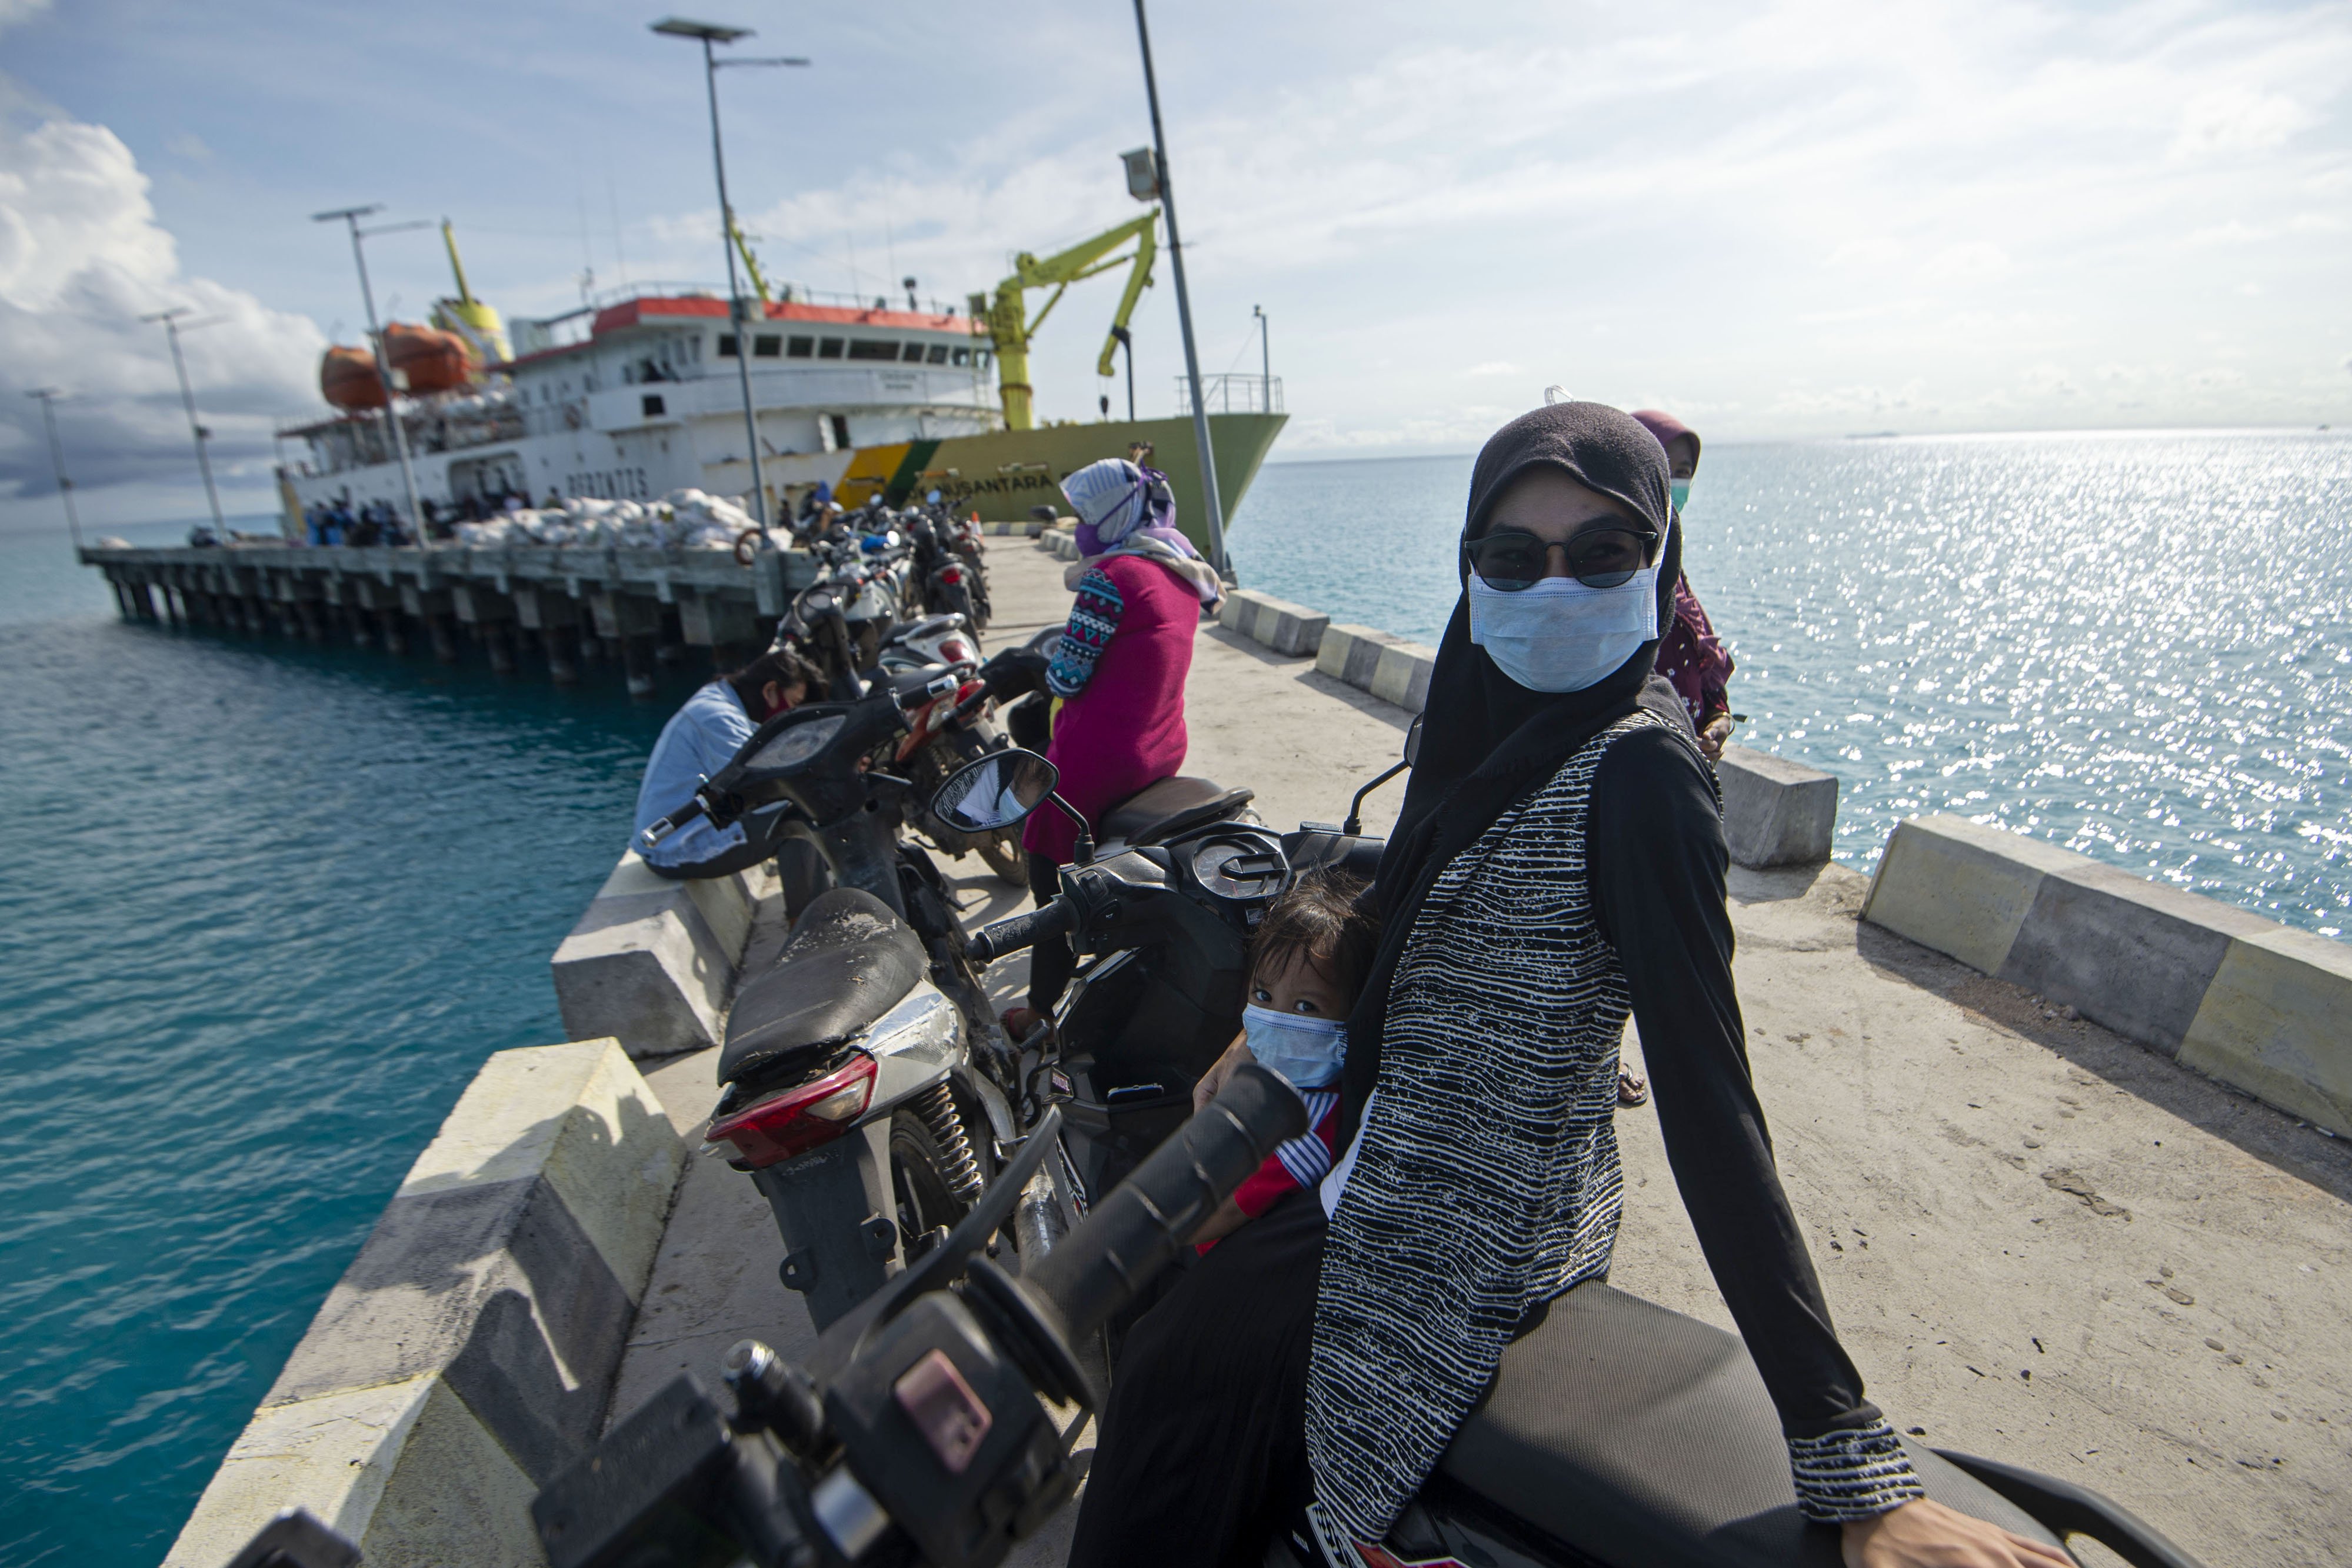 Warga menanti kerabatnya yang akan turun dari kapal pelayaran perintis KM Sabuk Nusantara 83 asal Pulau Sedanau berlabuh di dermaga Pelabuhan Pulau Laut, Kabupaten Natuna, Kepulauan Riau.